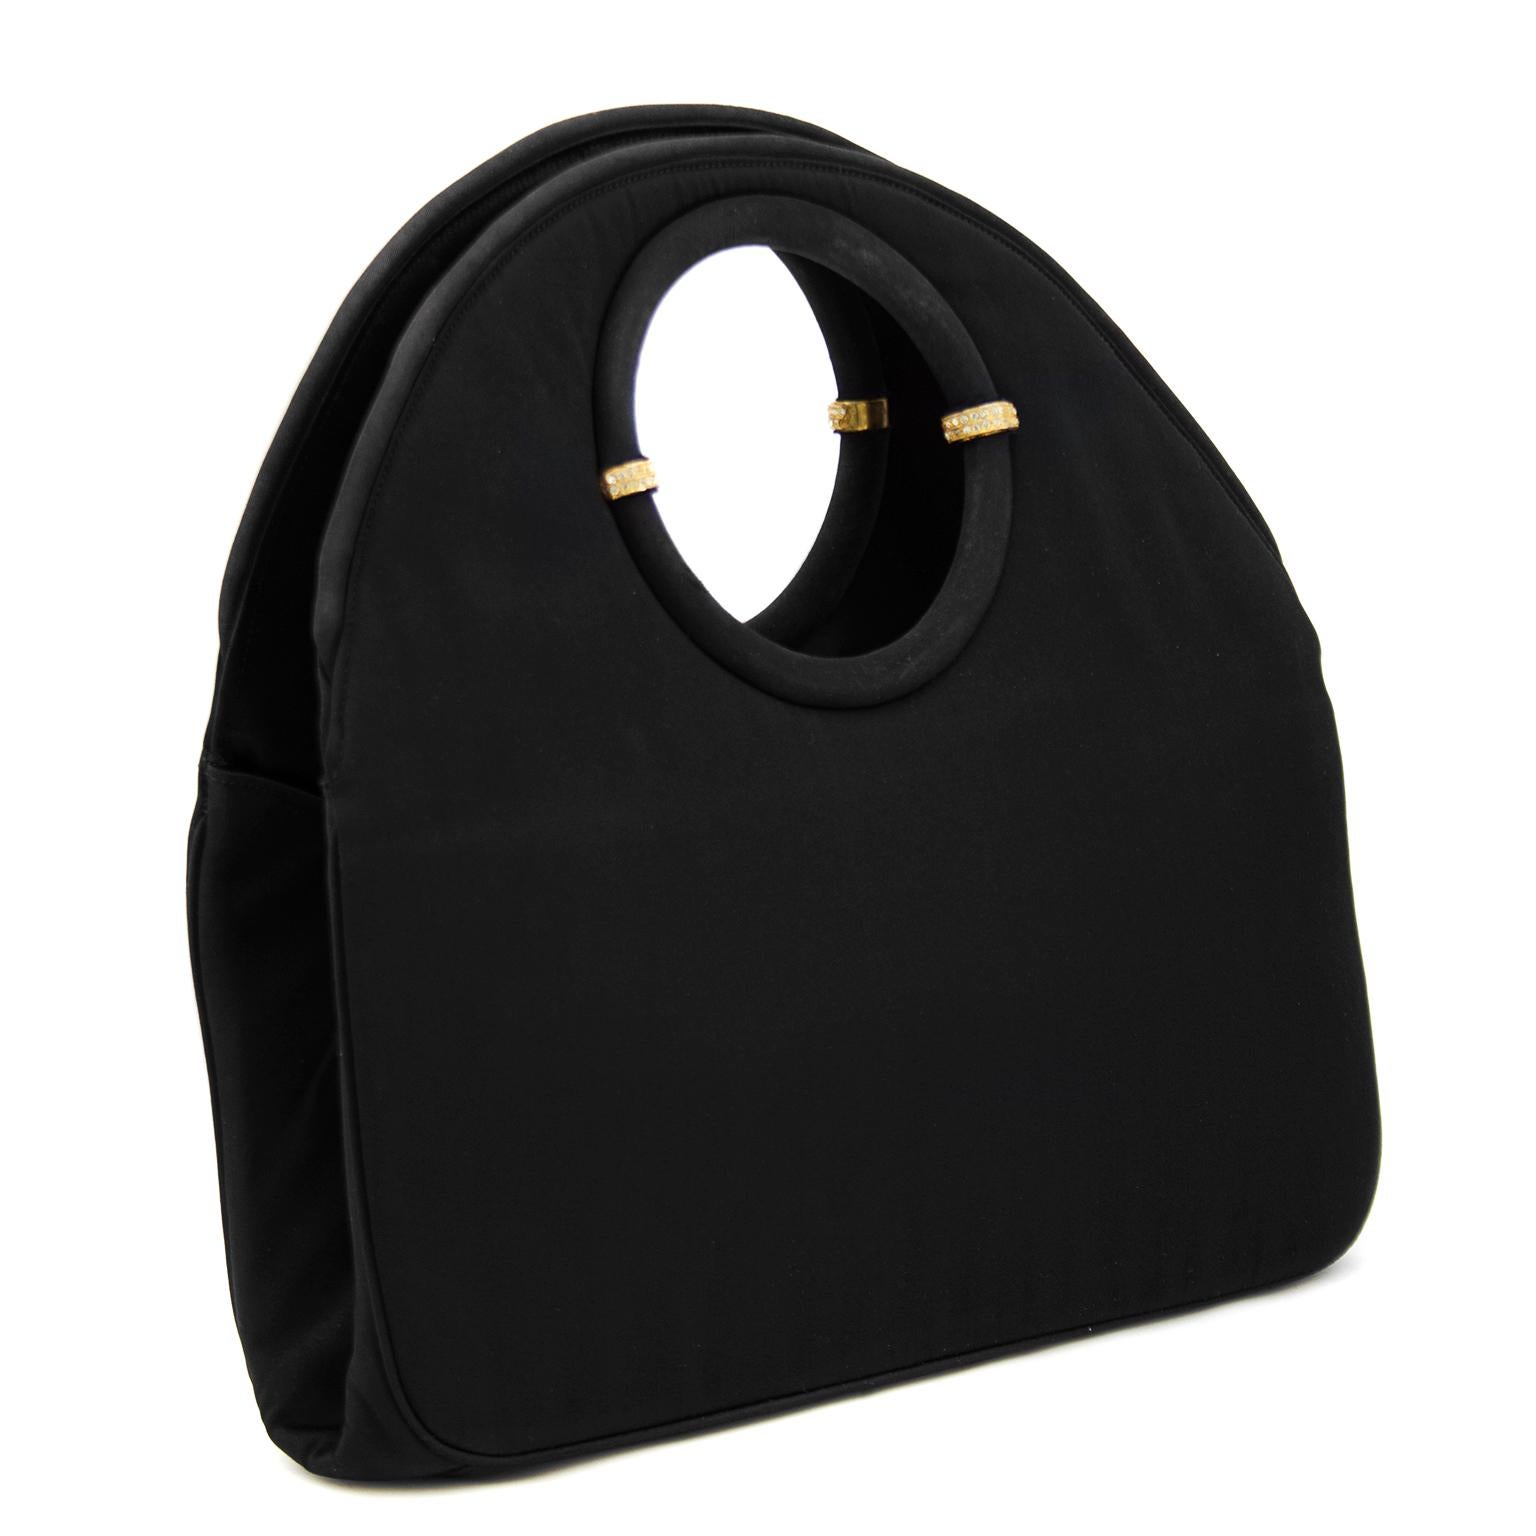 Twifaille von Rosenfeld aus den späten 1950er Jahren, schwarze Abendtasche aus Satin. Der runde Henkel ist innen mit goldenen und strassbesetzten Verzierungen versehen, die die runde Form der Tasche unterstreichen. Das Innere ist vollständig